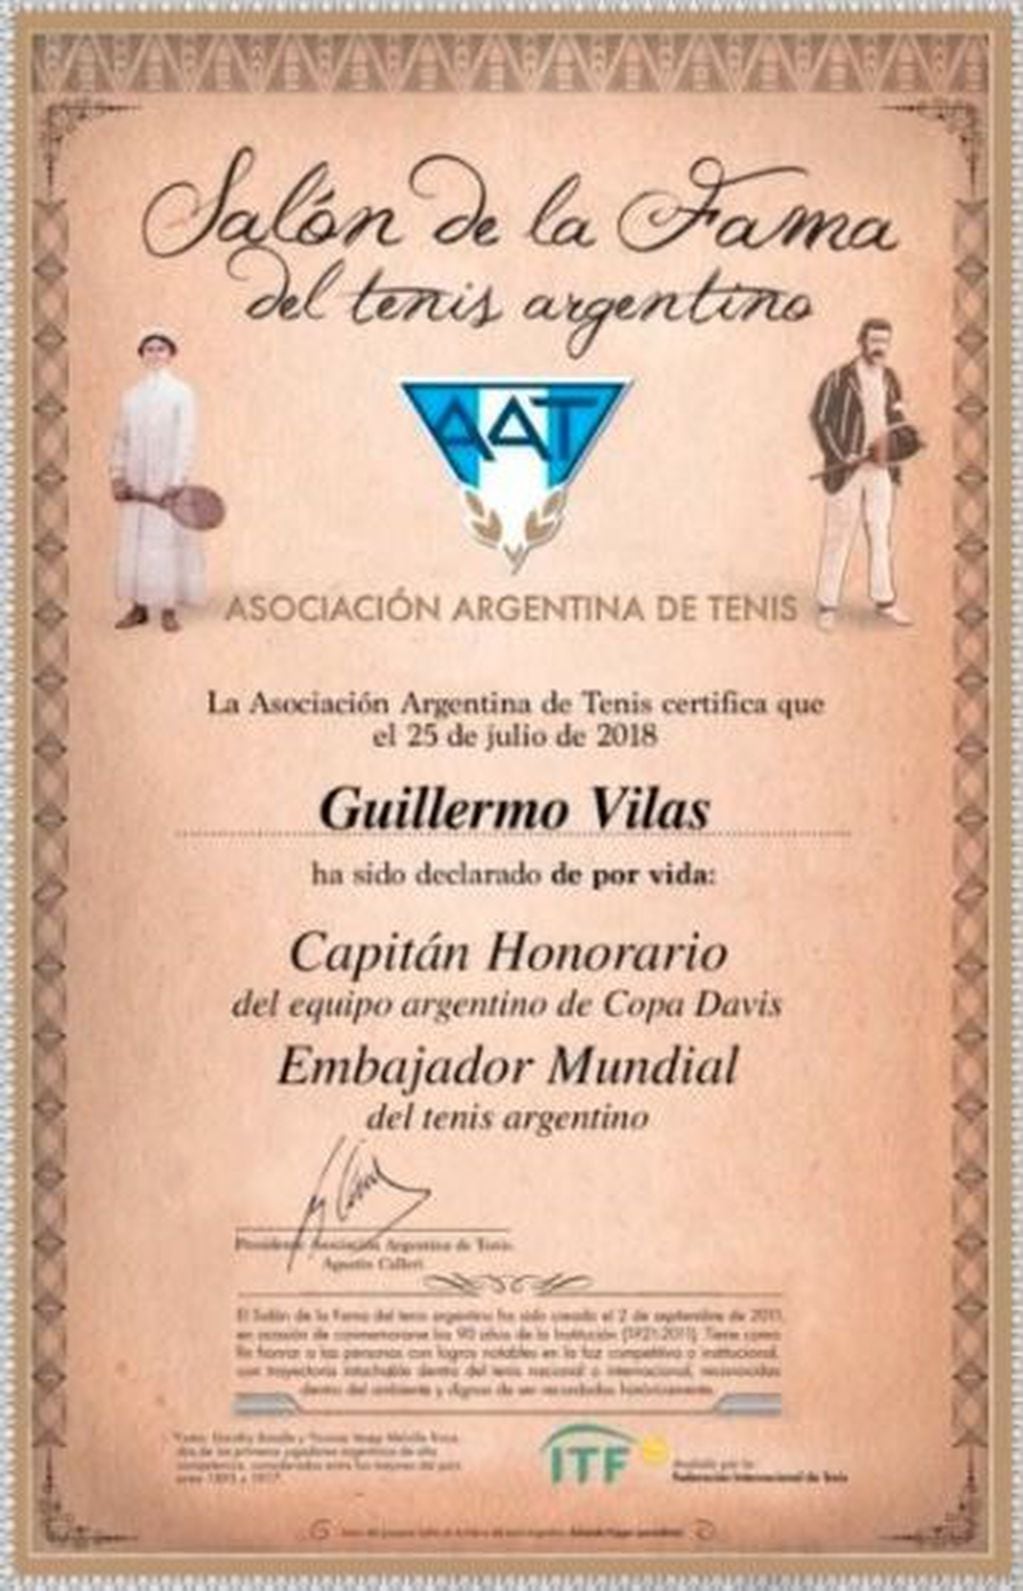 El diploma para Guillermo Vilas. (ATT)